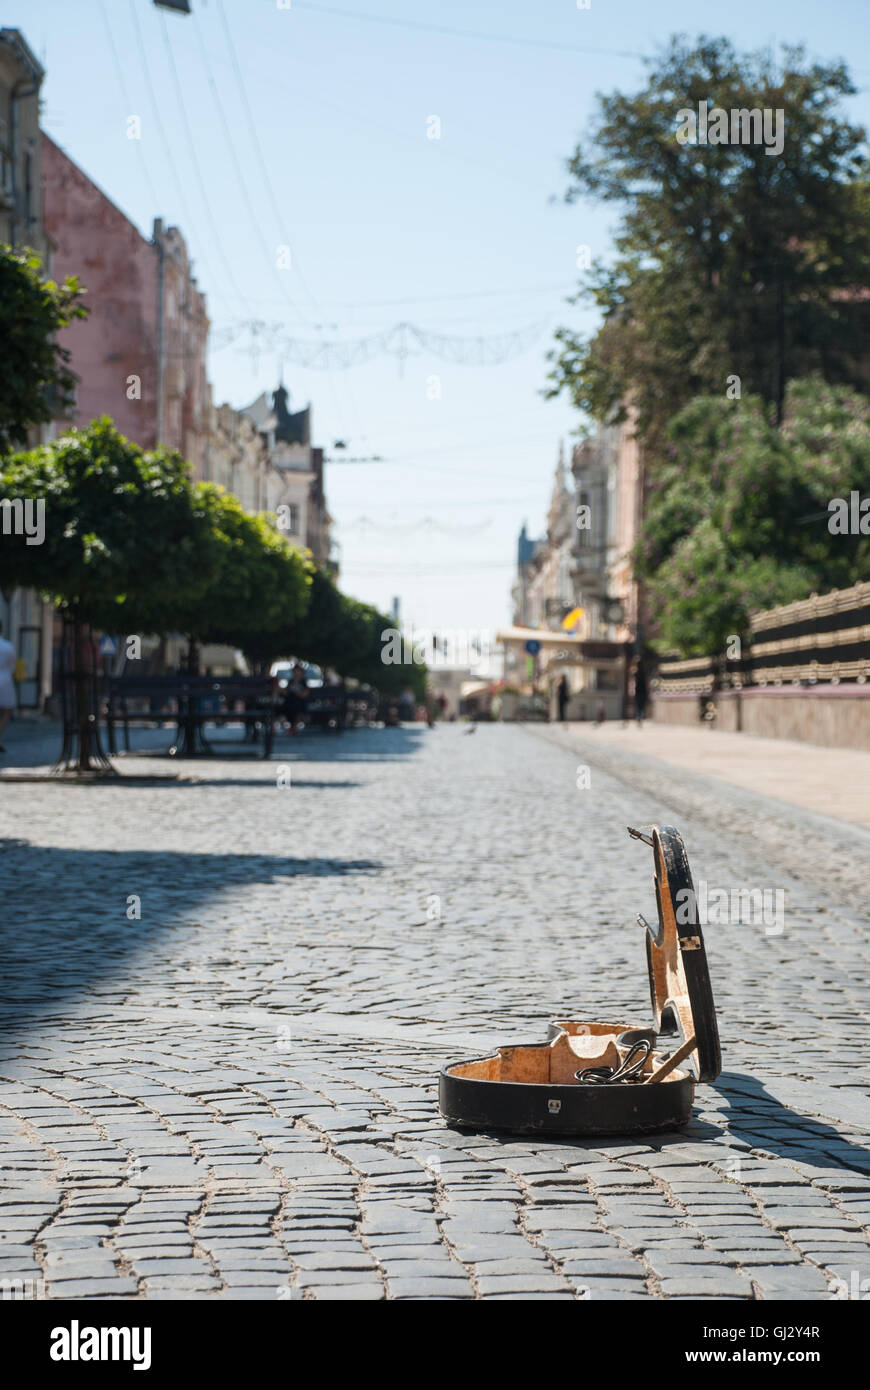 Pflaster auf der Straße der Altstadt. Der Hintergrund jedoch unscharf. Im Vordergrund ist ein offener Fall vom Violoncello. Stockfoto